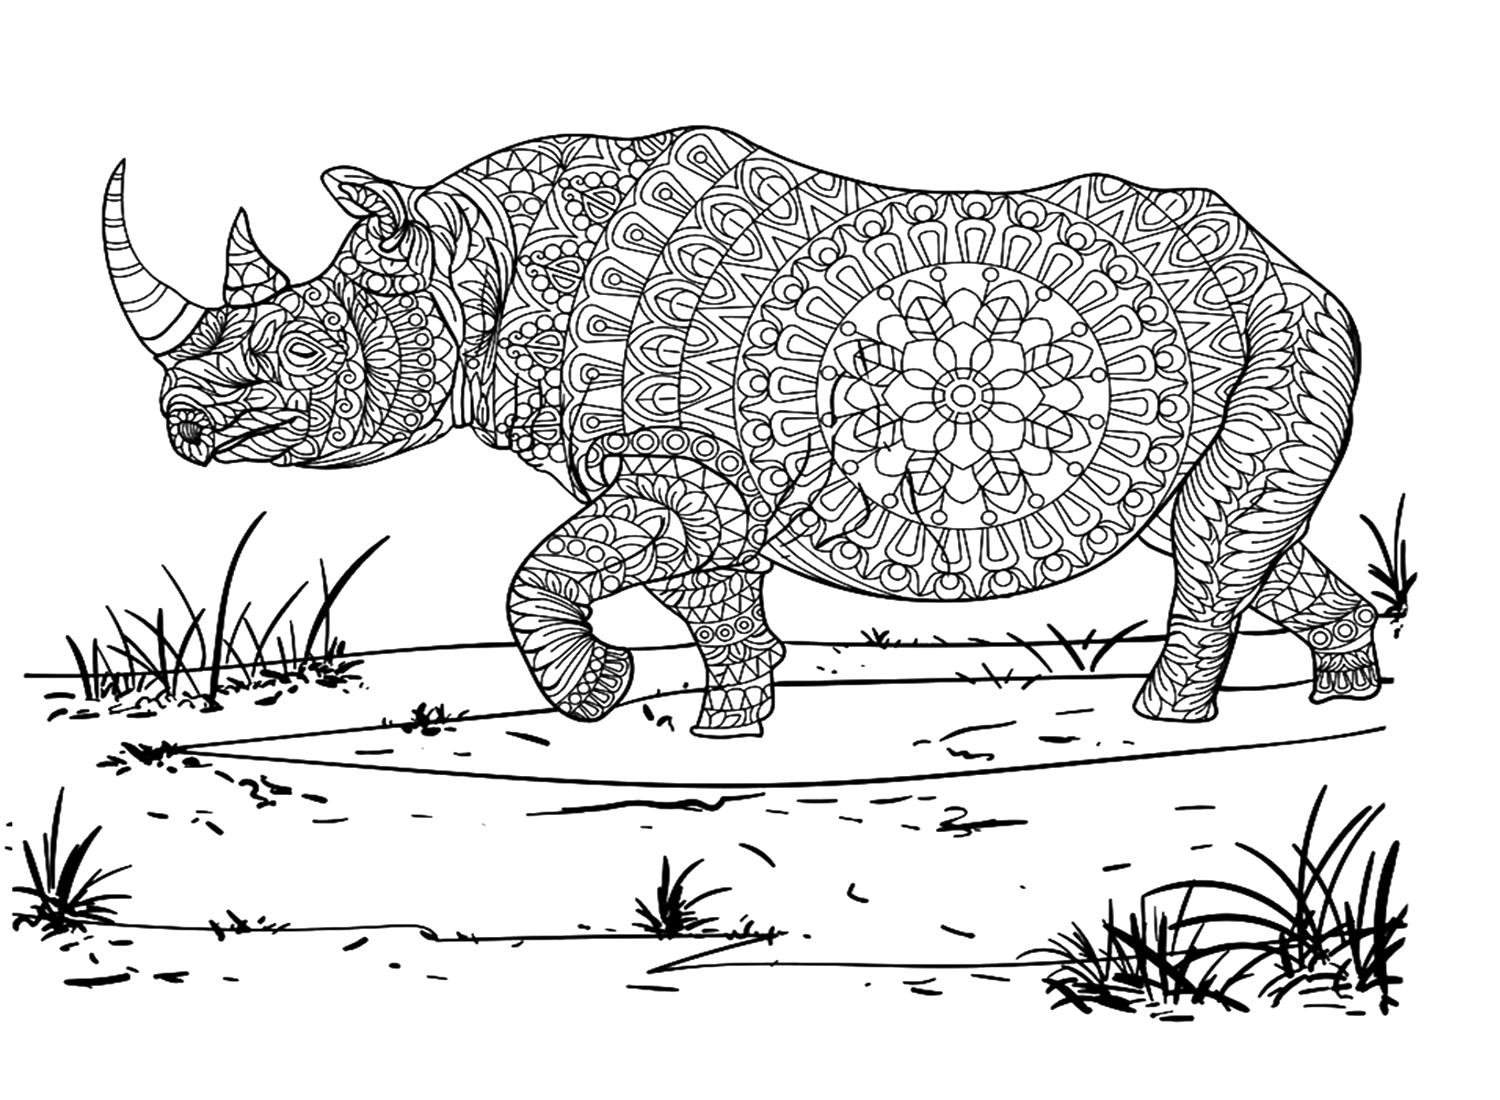 Disegni di scarabocchi di rinoceronte di Rhino